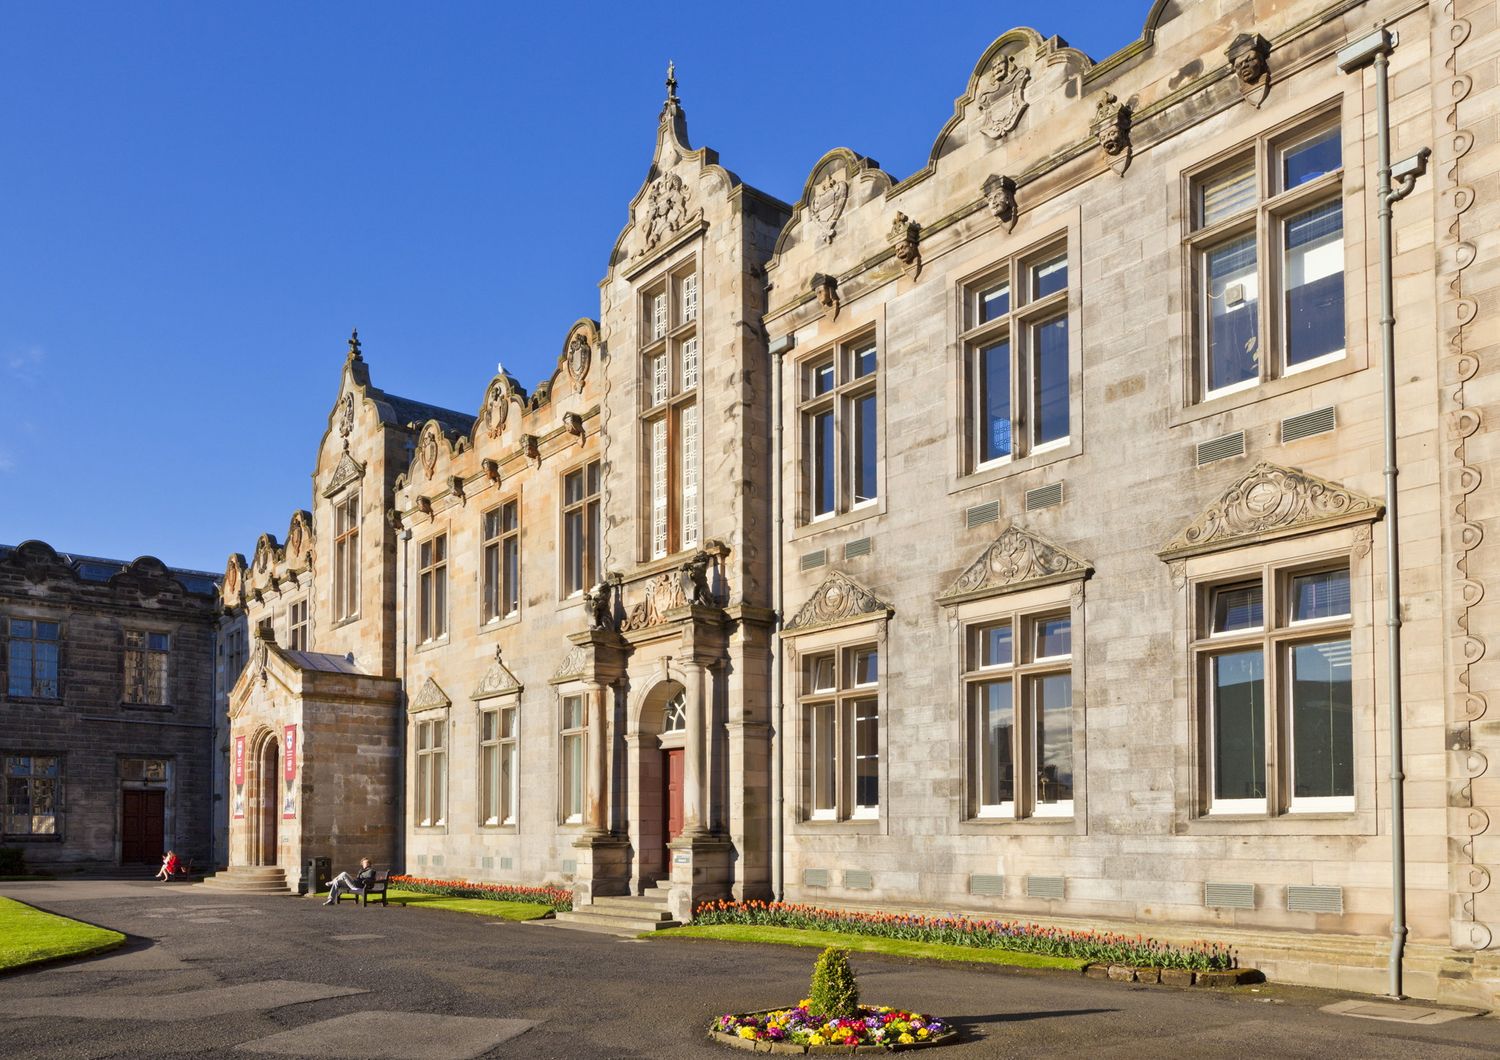 Il college di St.Andrews in Scozia